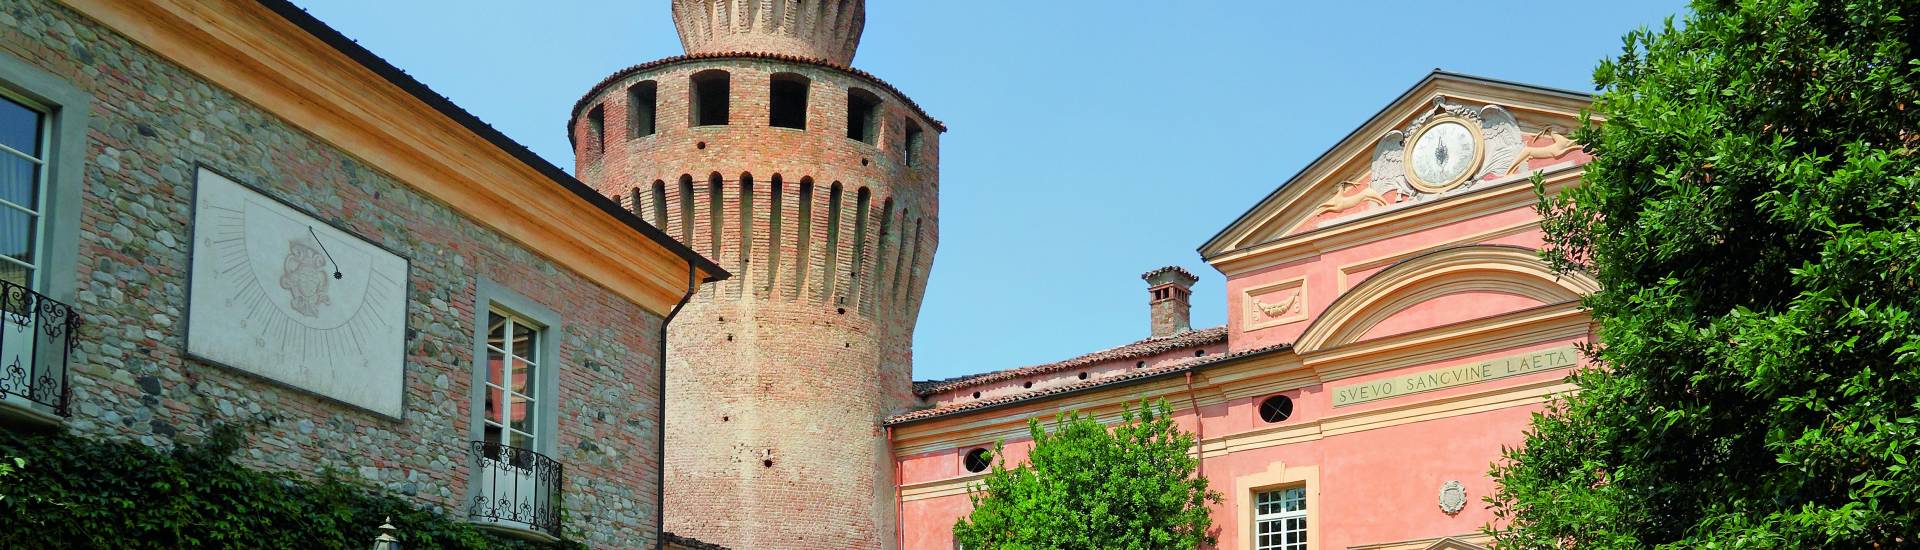 Castello di Rivalta -  foto di: |Orazio Zanardi Landi| - Archivio fotografico del castello